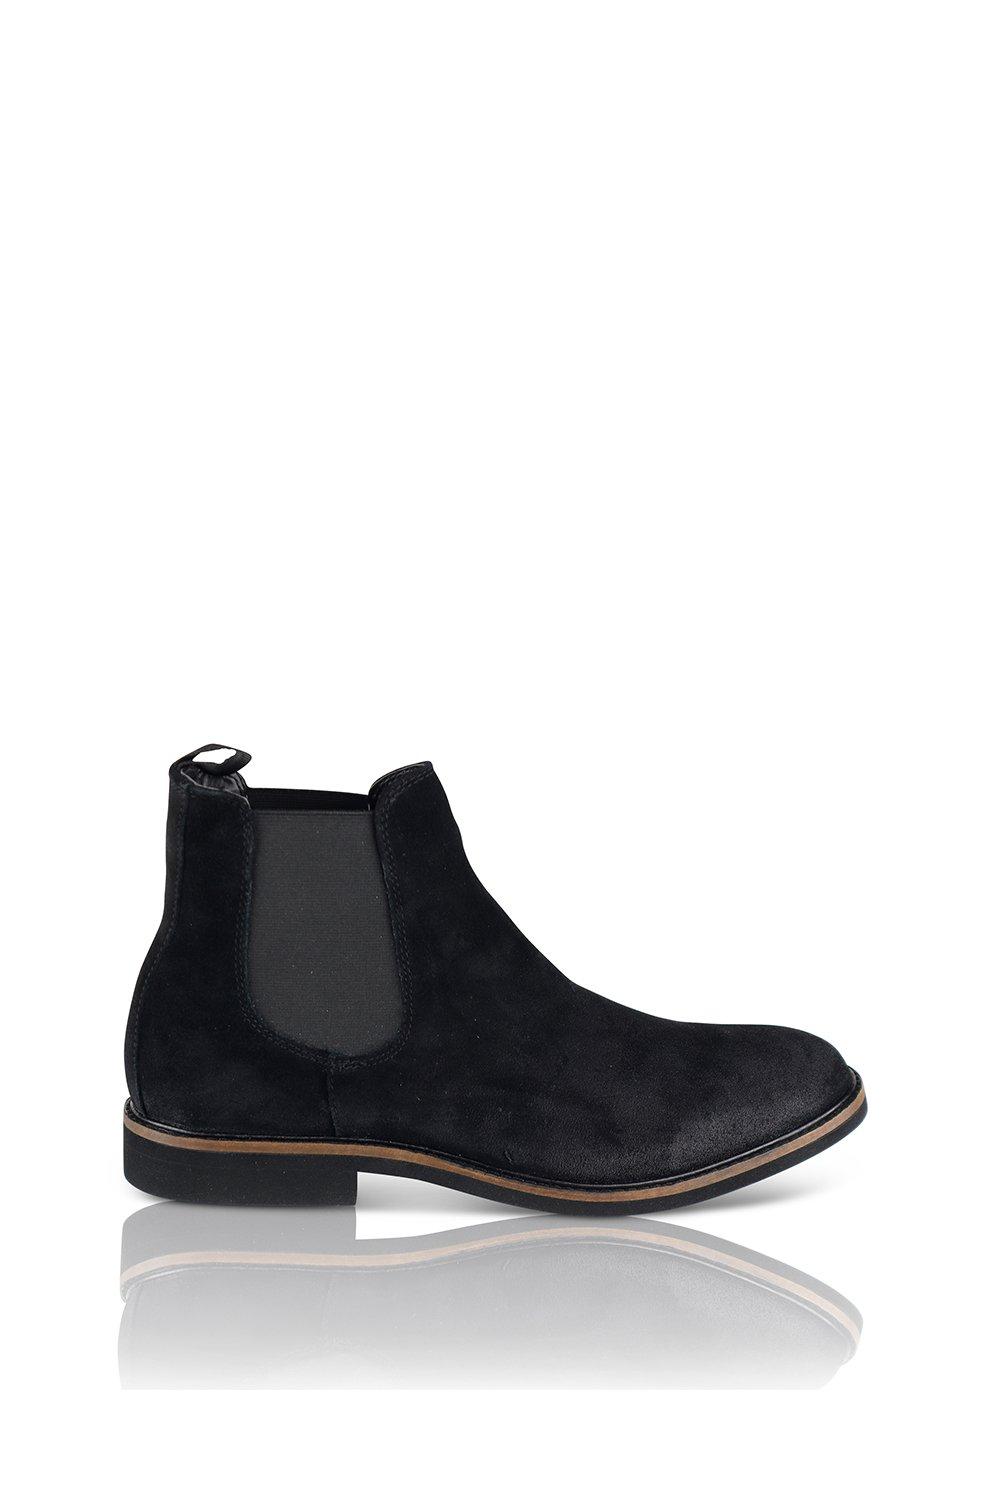 Замшевые ботинки челси San Diego Silver Street London, черный замшевые ботинки челси arco chelsea guess коричневый